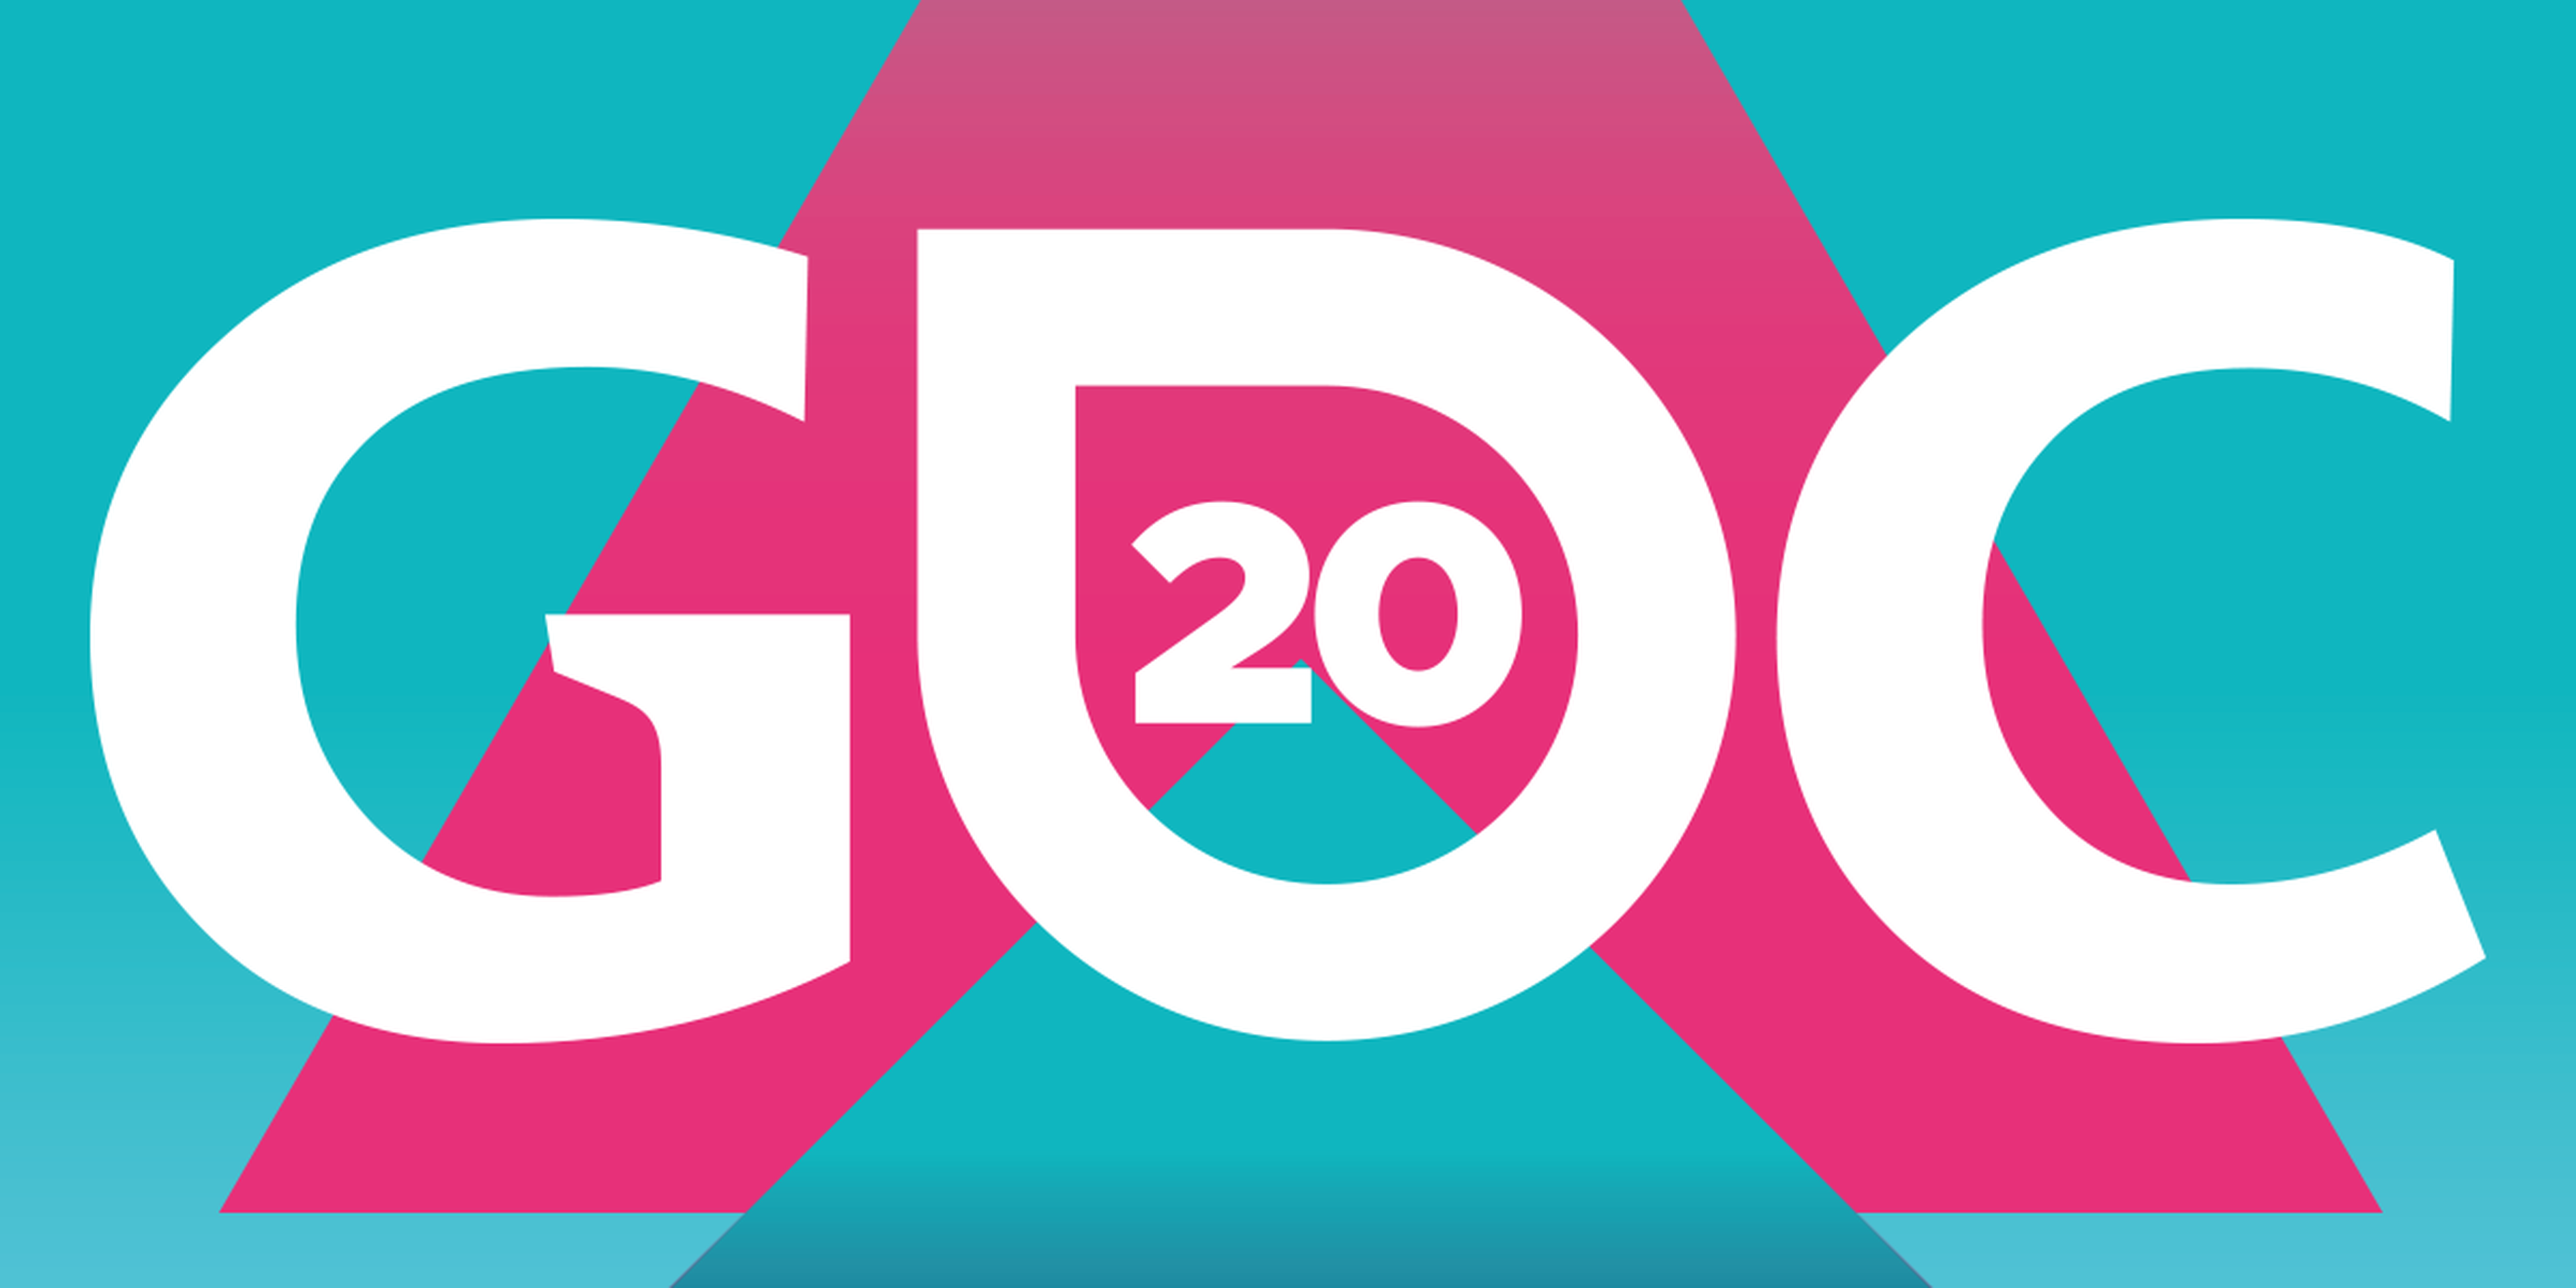 GDC 2020